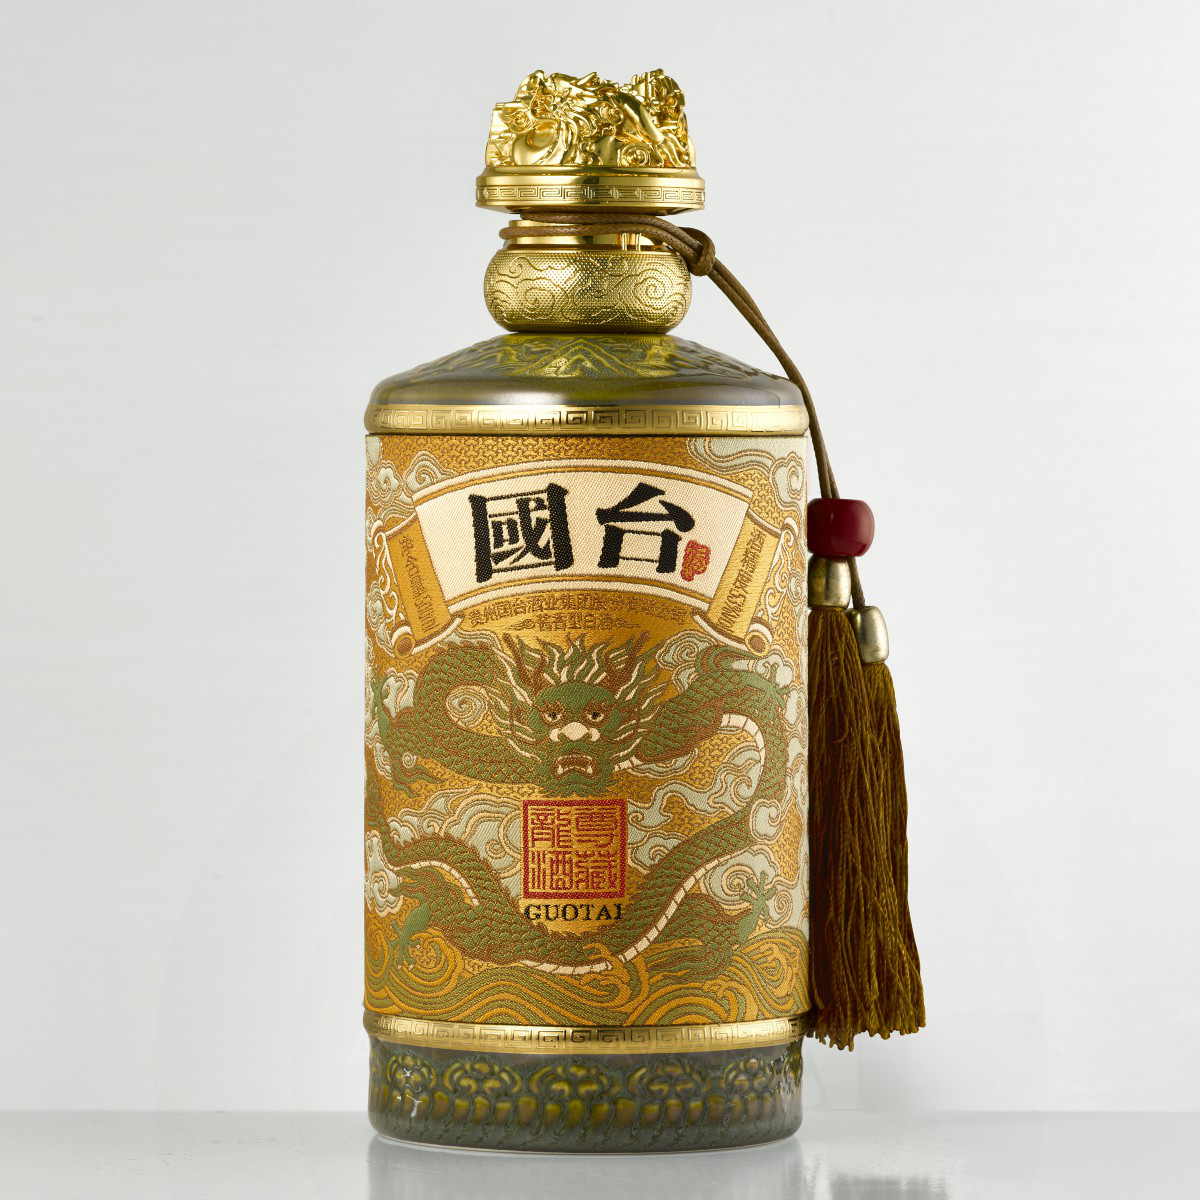 Guotai Longjiu Zuncang Chinese Baijiu Packaging by Ying Song Brand Design Co., Ltd